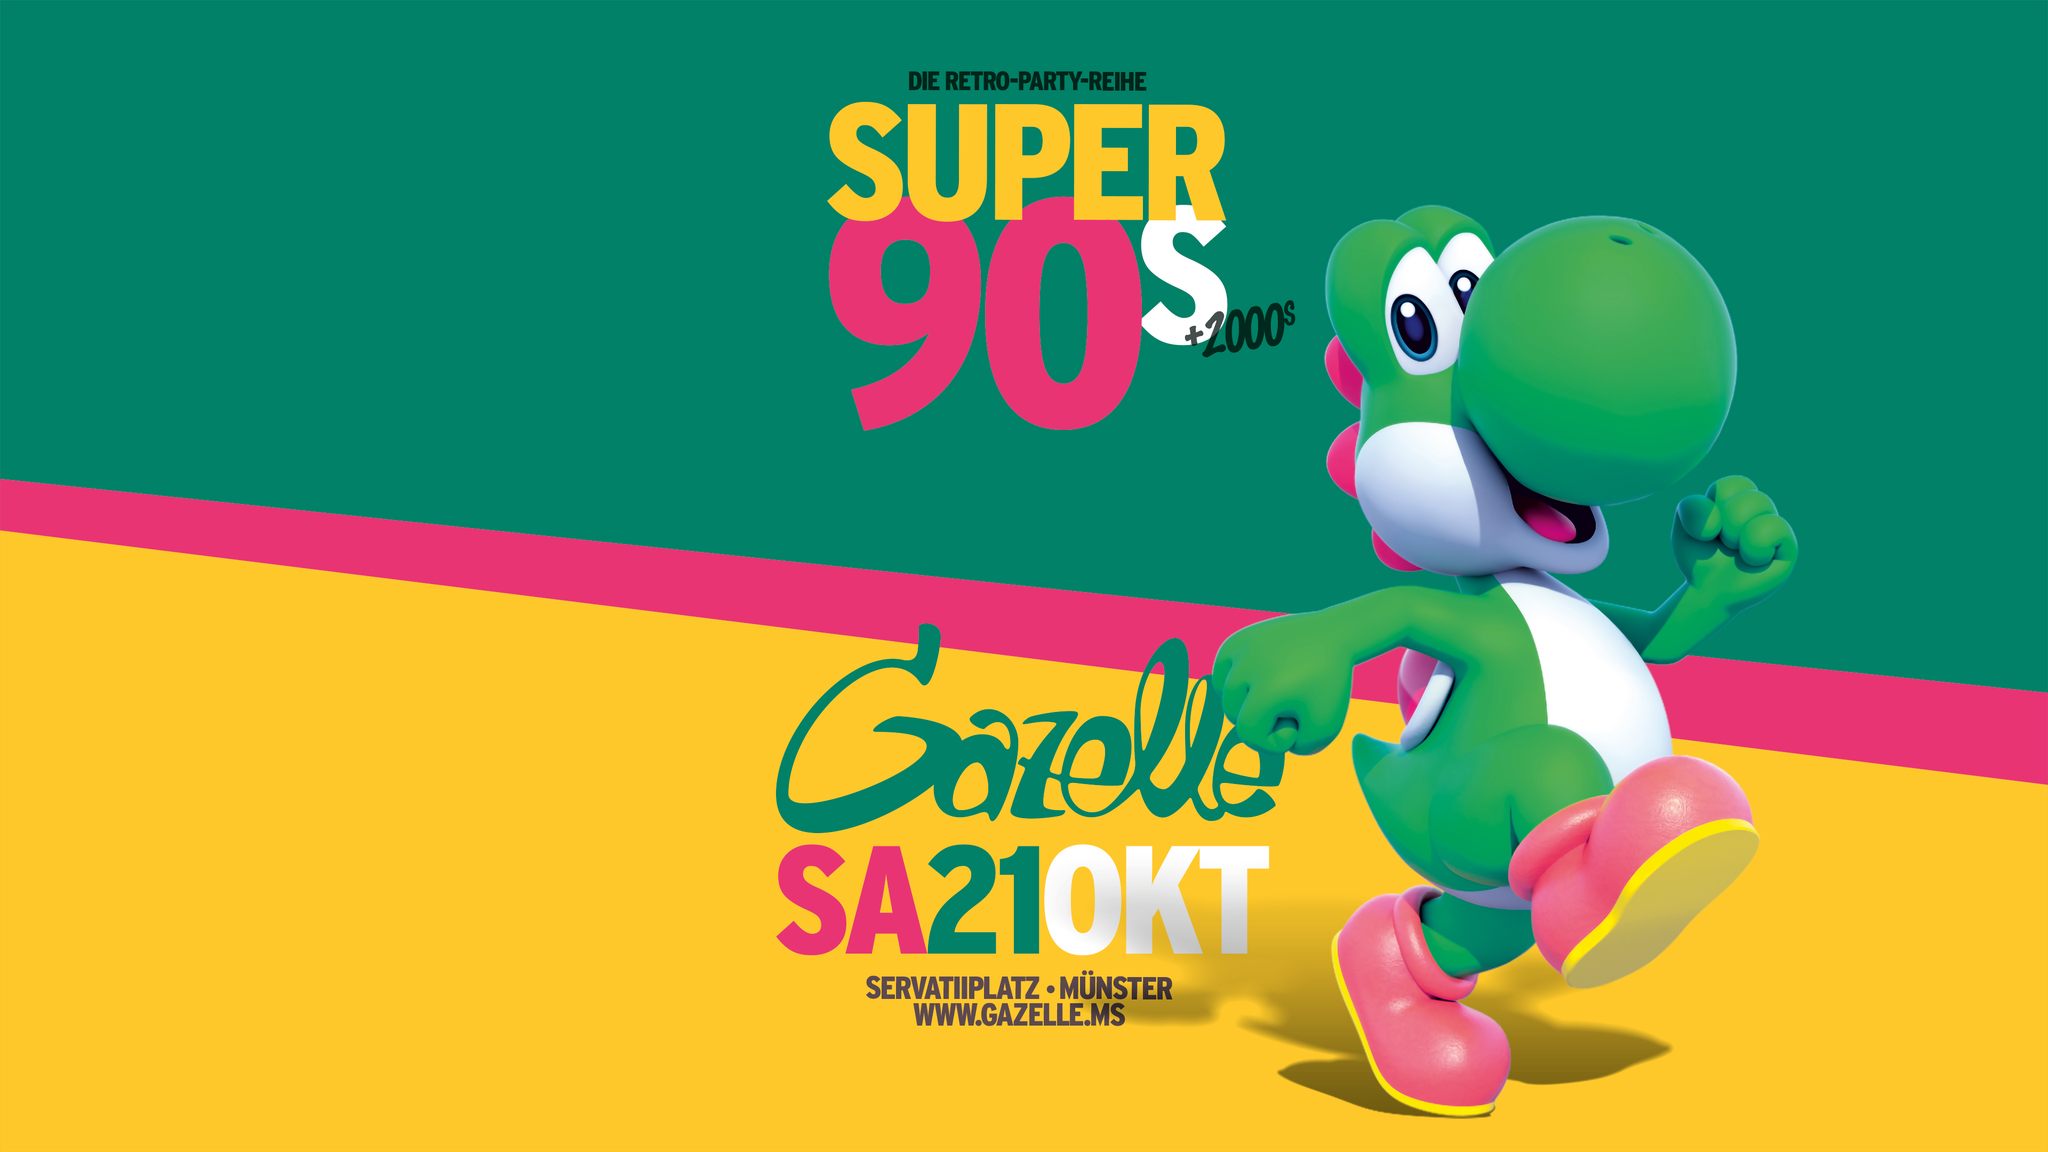 SUPER90's • Sa. 21.10 - Gazelle